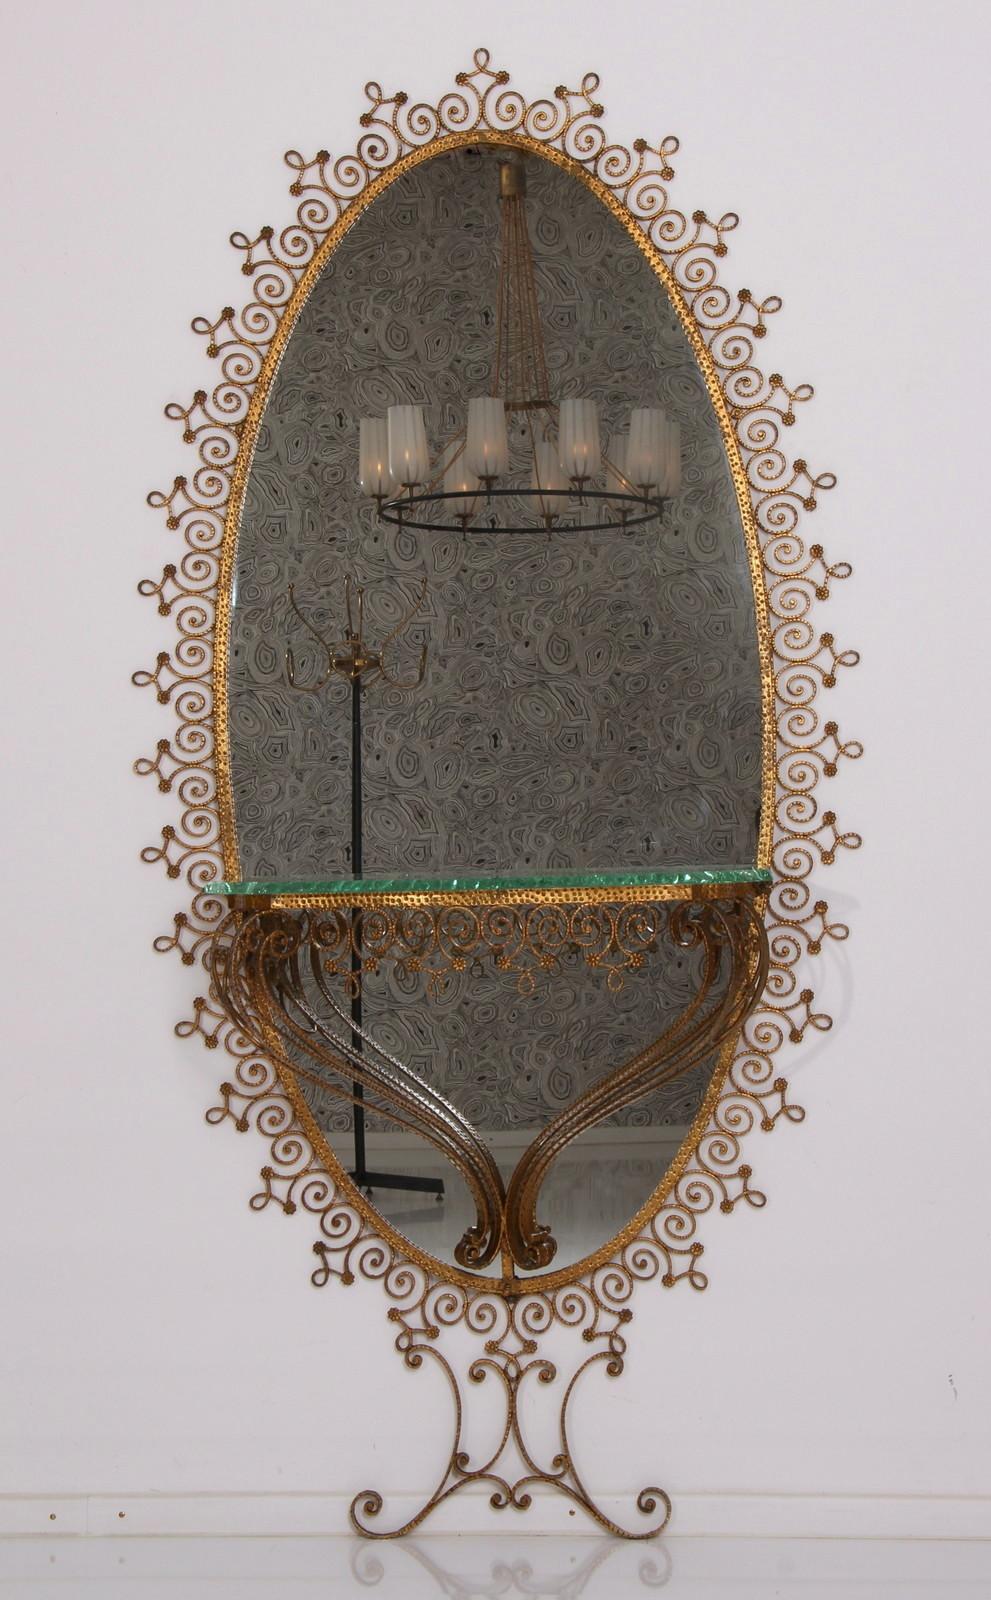 Ein goldener, mittelalterlicher, moderner italienischer Full-Size-Bodenspiegel aus handgefertigtem, vergoldetem Schmiedeeisen mit originalem Spiegelglas, entworfen von Pier Luigi Colli, in sehr gutem Zustand. 
Der ovale Wandspiegel ist mit einem